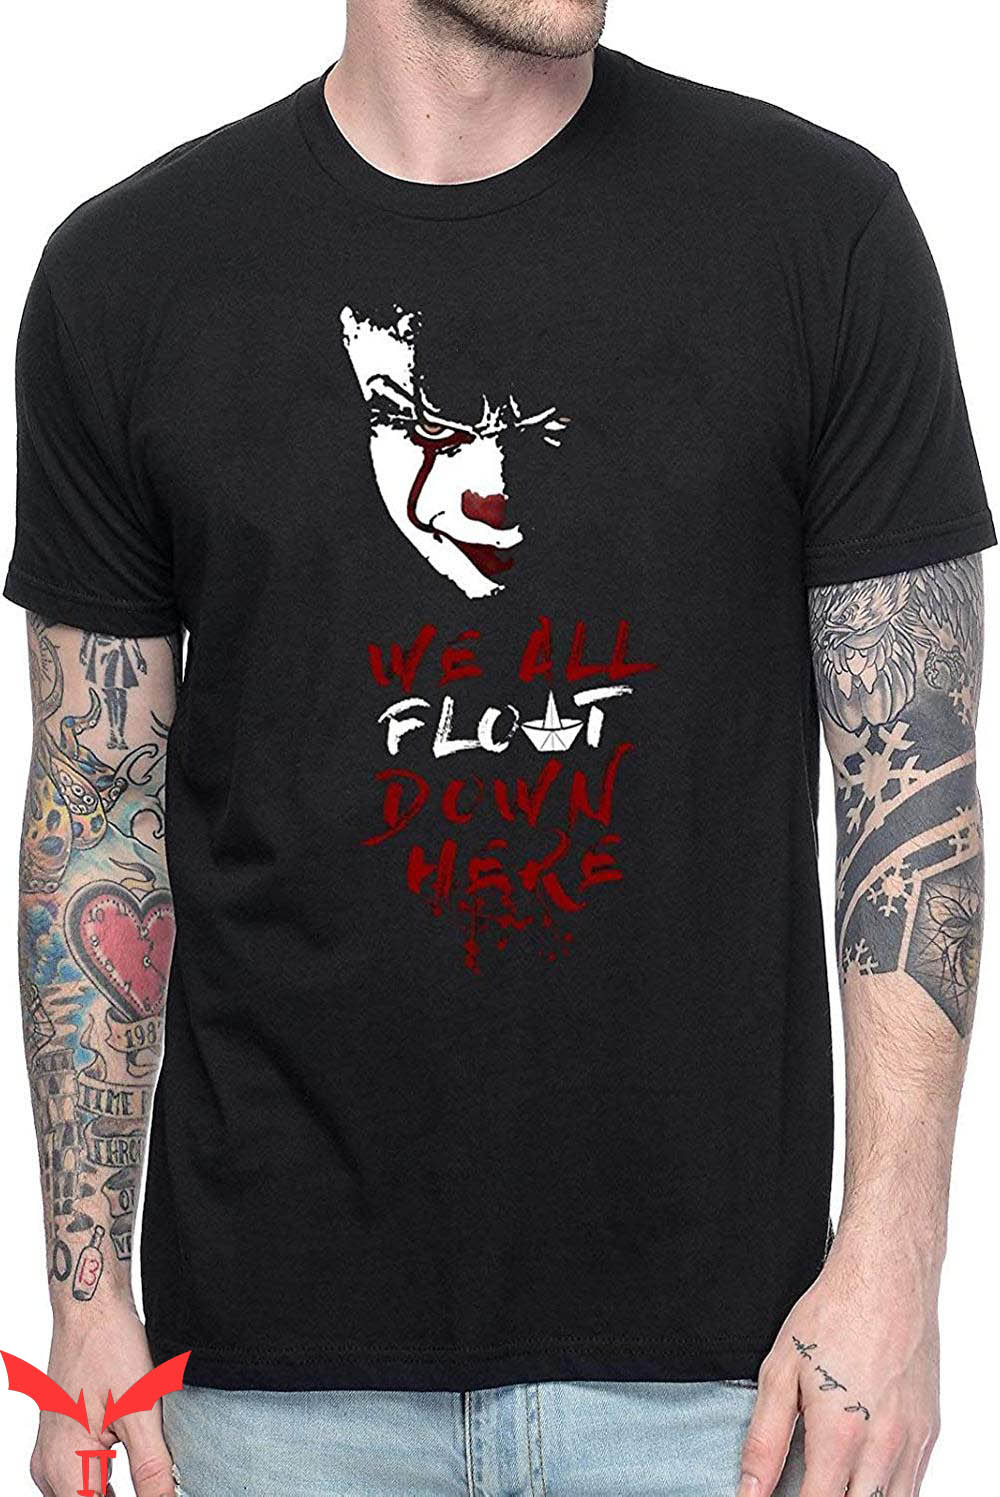 Stephen King IT T-Shirt Thriller Horror Movie Clown Joker